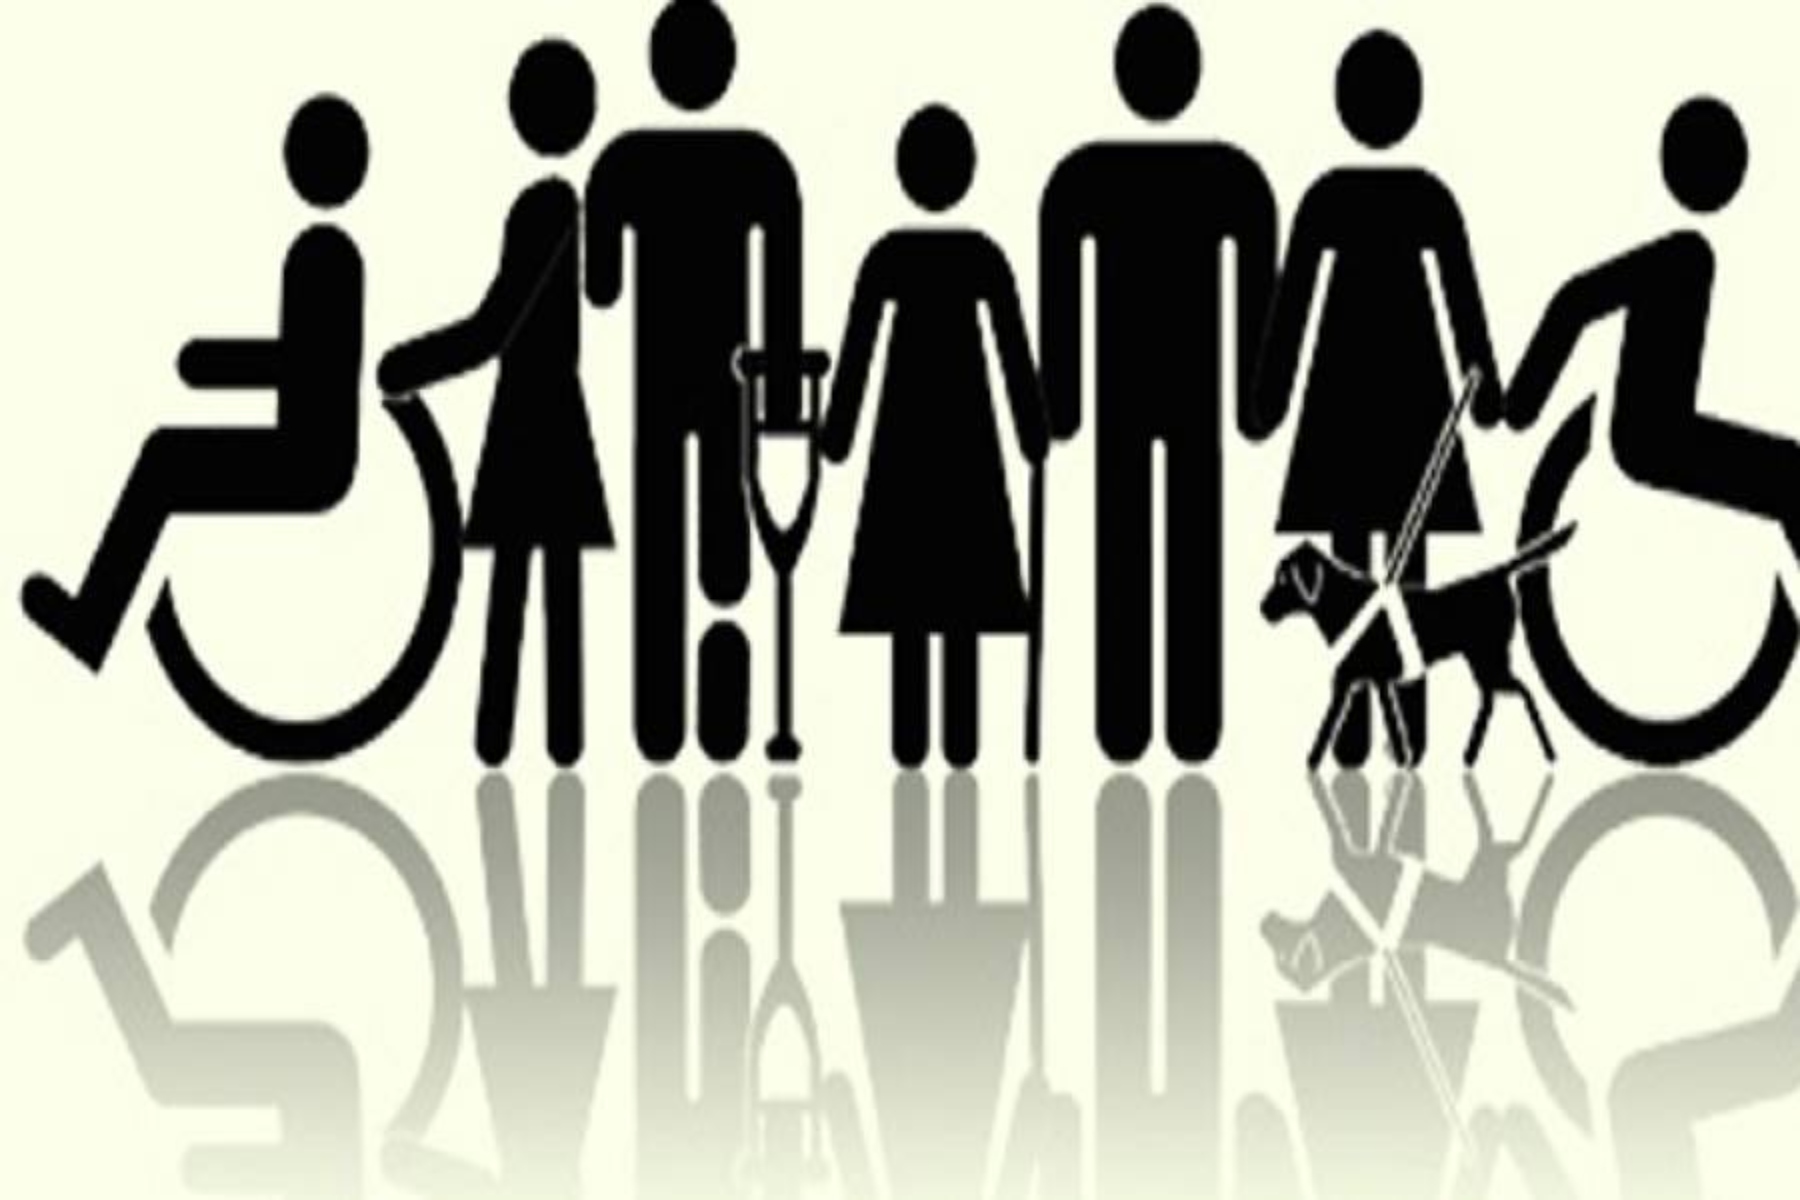 ΑμεΑ σύνταξη: Τι αλλάζει στη συνταξιοδότηση των ατόμων με αναπηρία;